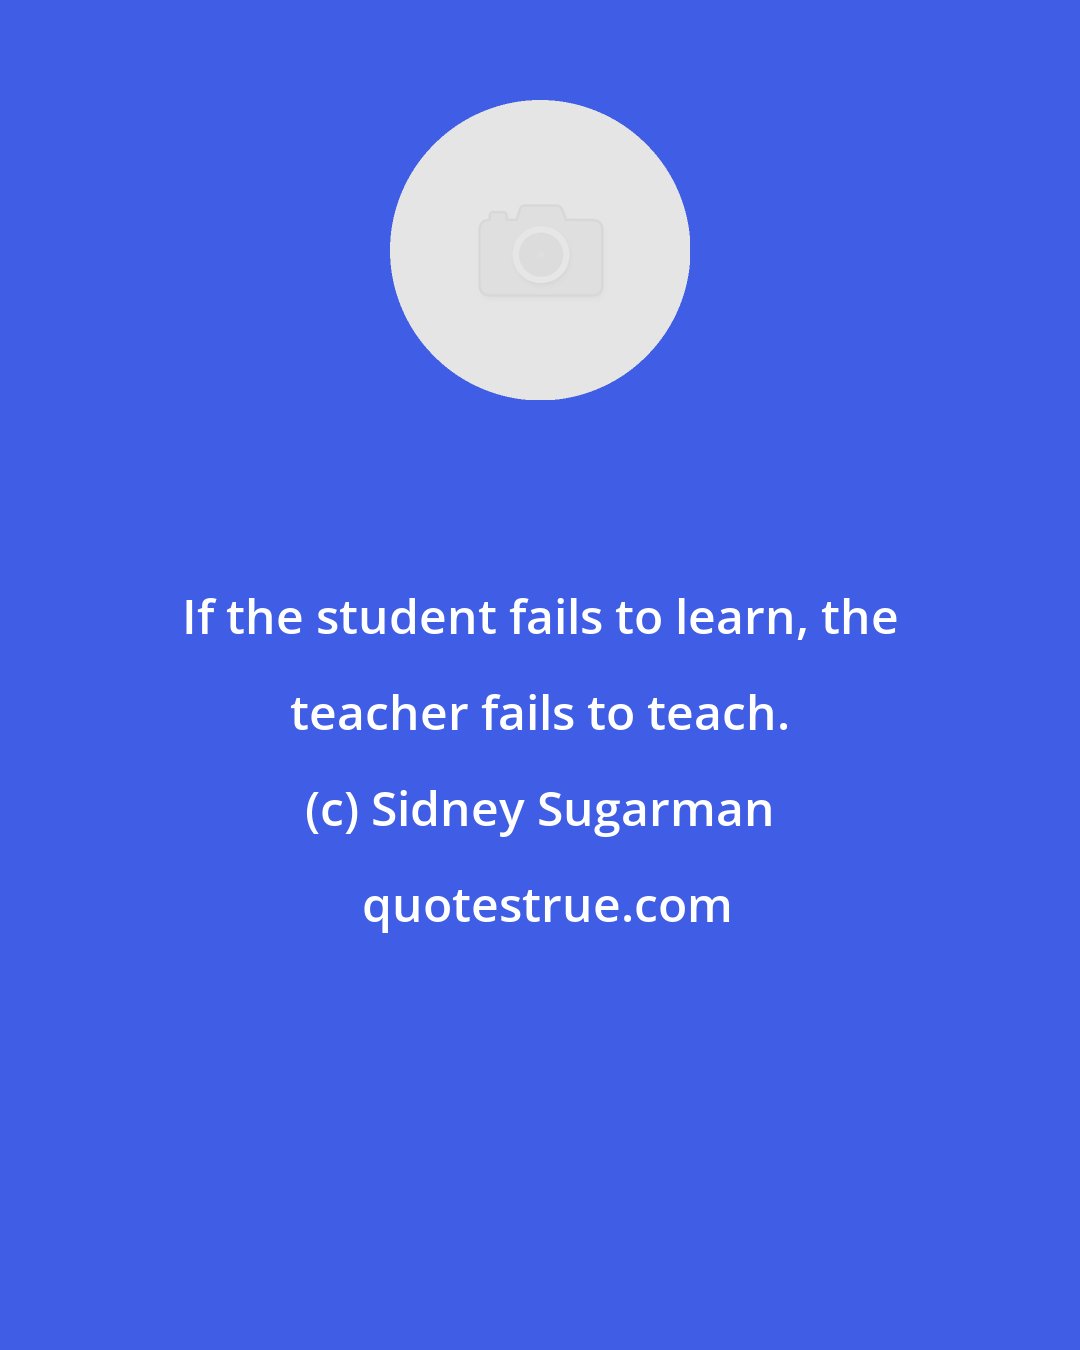 Sidney Sugarman: If the student fails to learn, the teacher fails to teach.